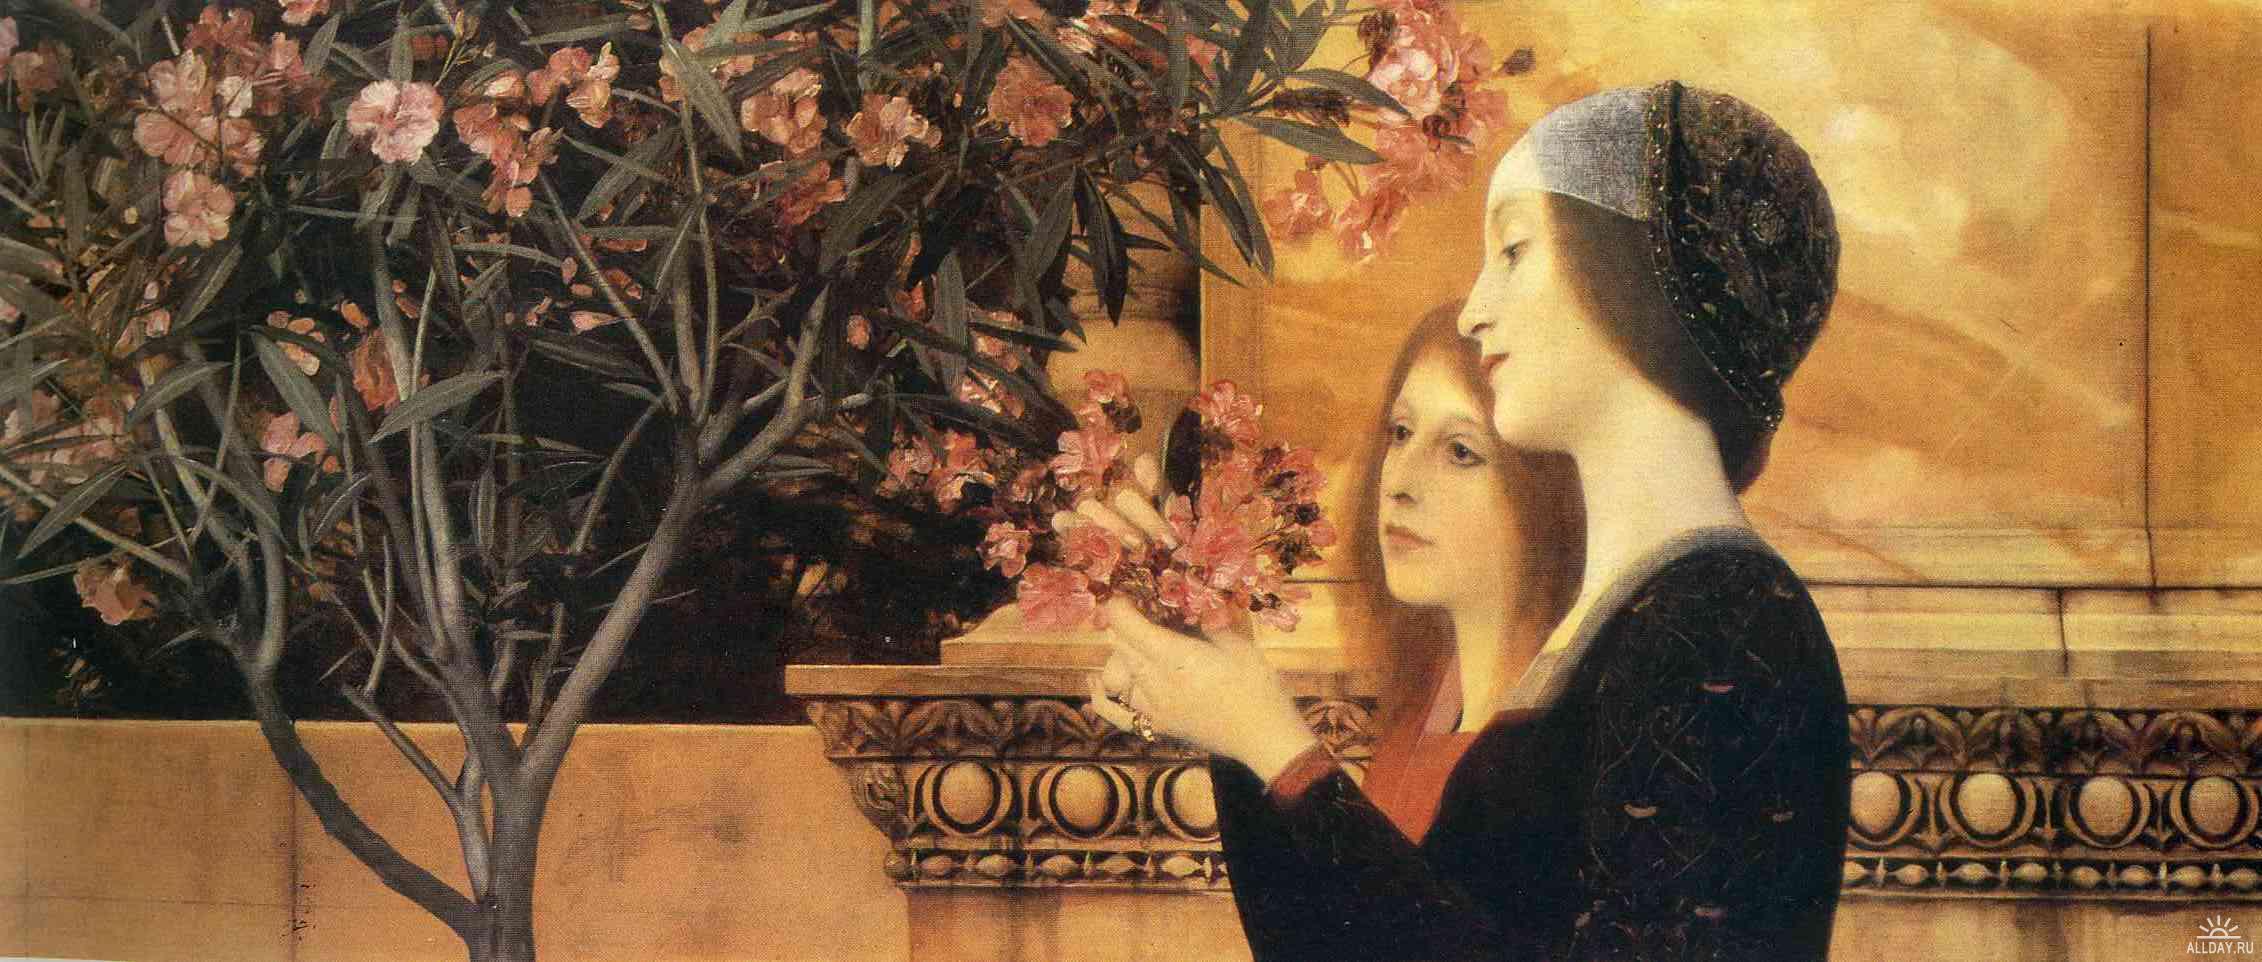 少女們和夾竹桃花 by 古斯塔夫 克林姆特 - 1890-1892 - 55 x 128 cm 